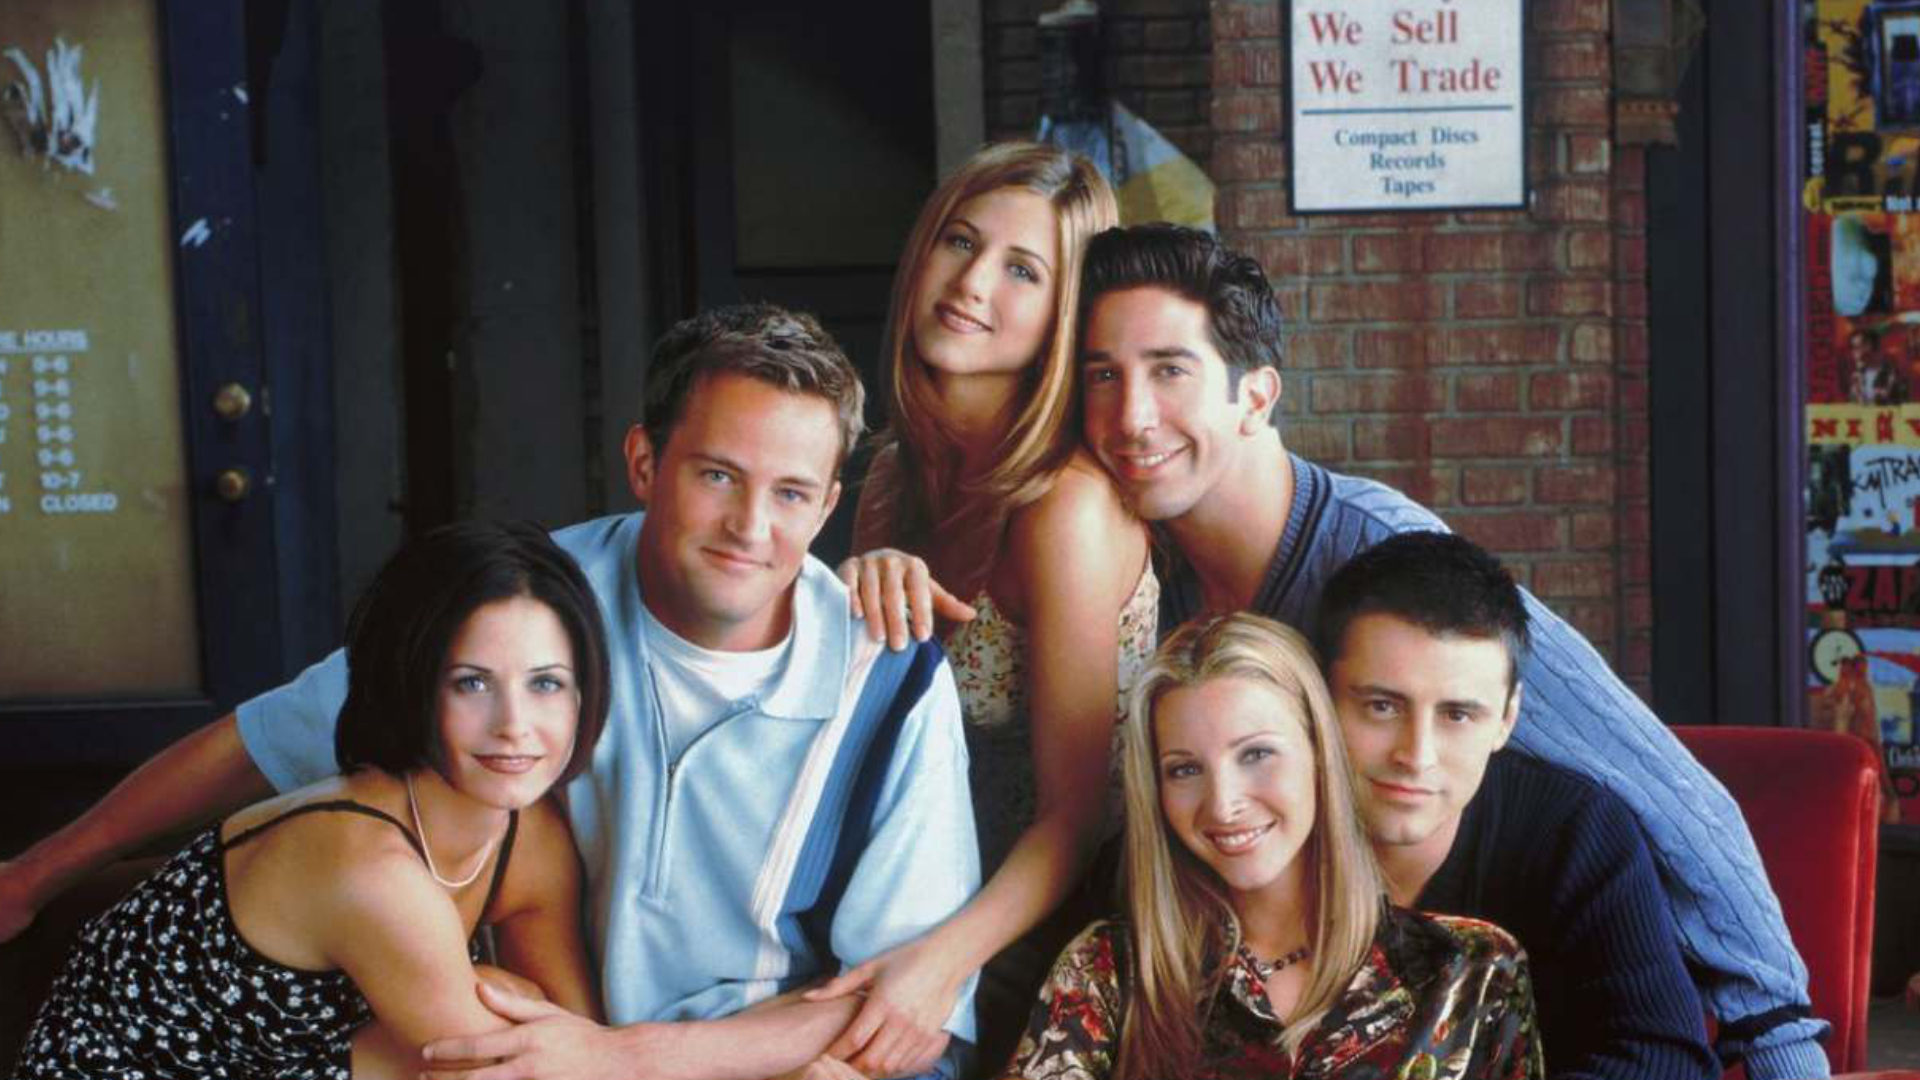 Delorean Musical episodio 8: La canción de Friends